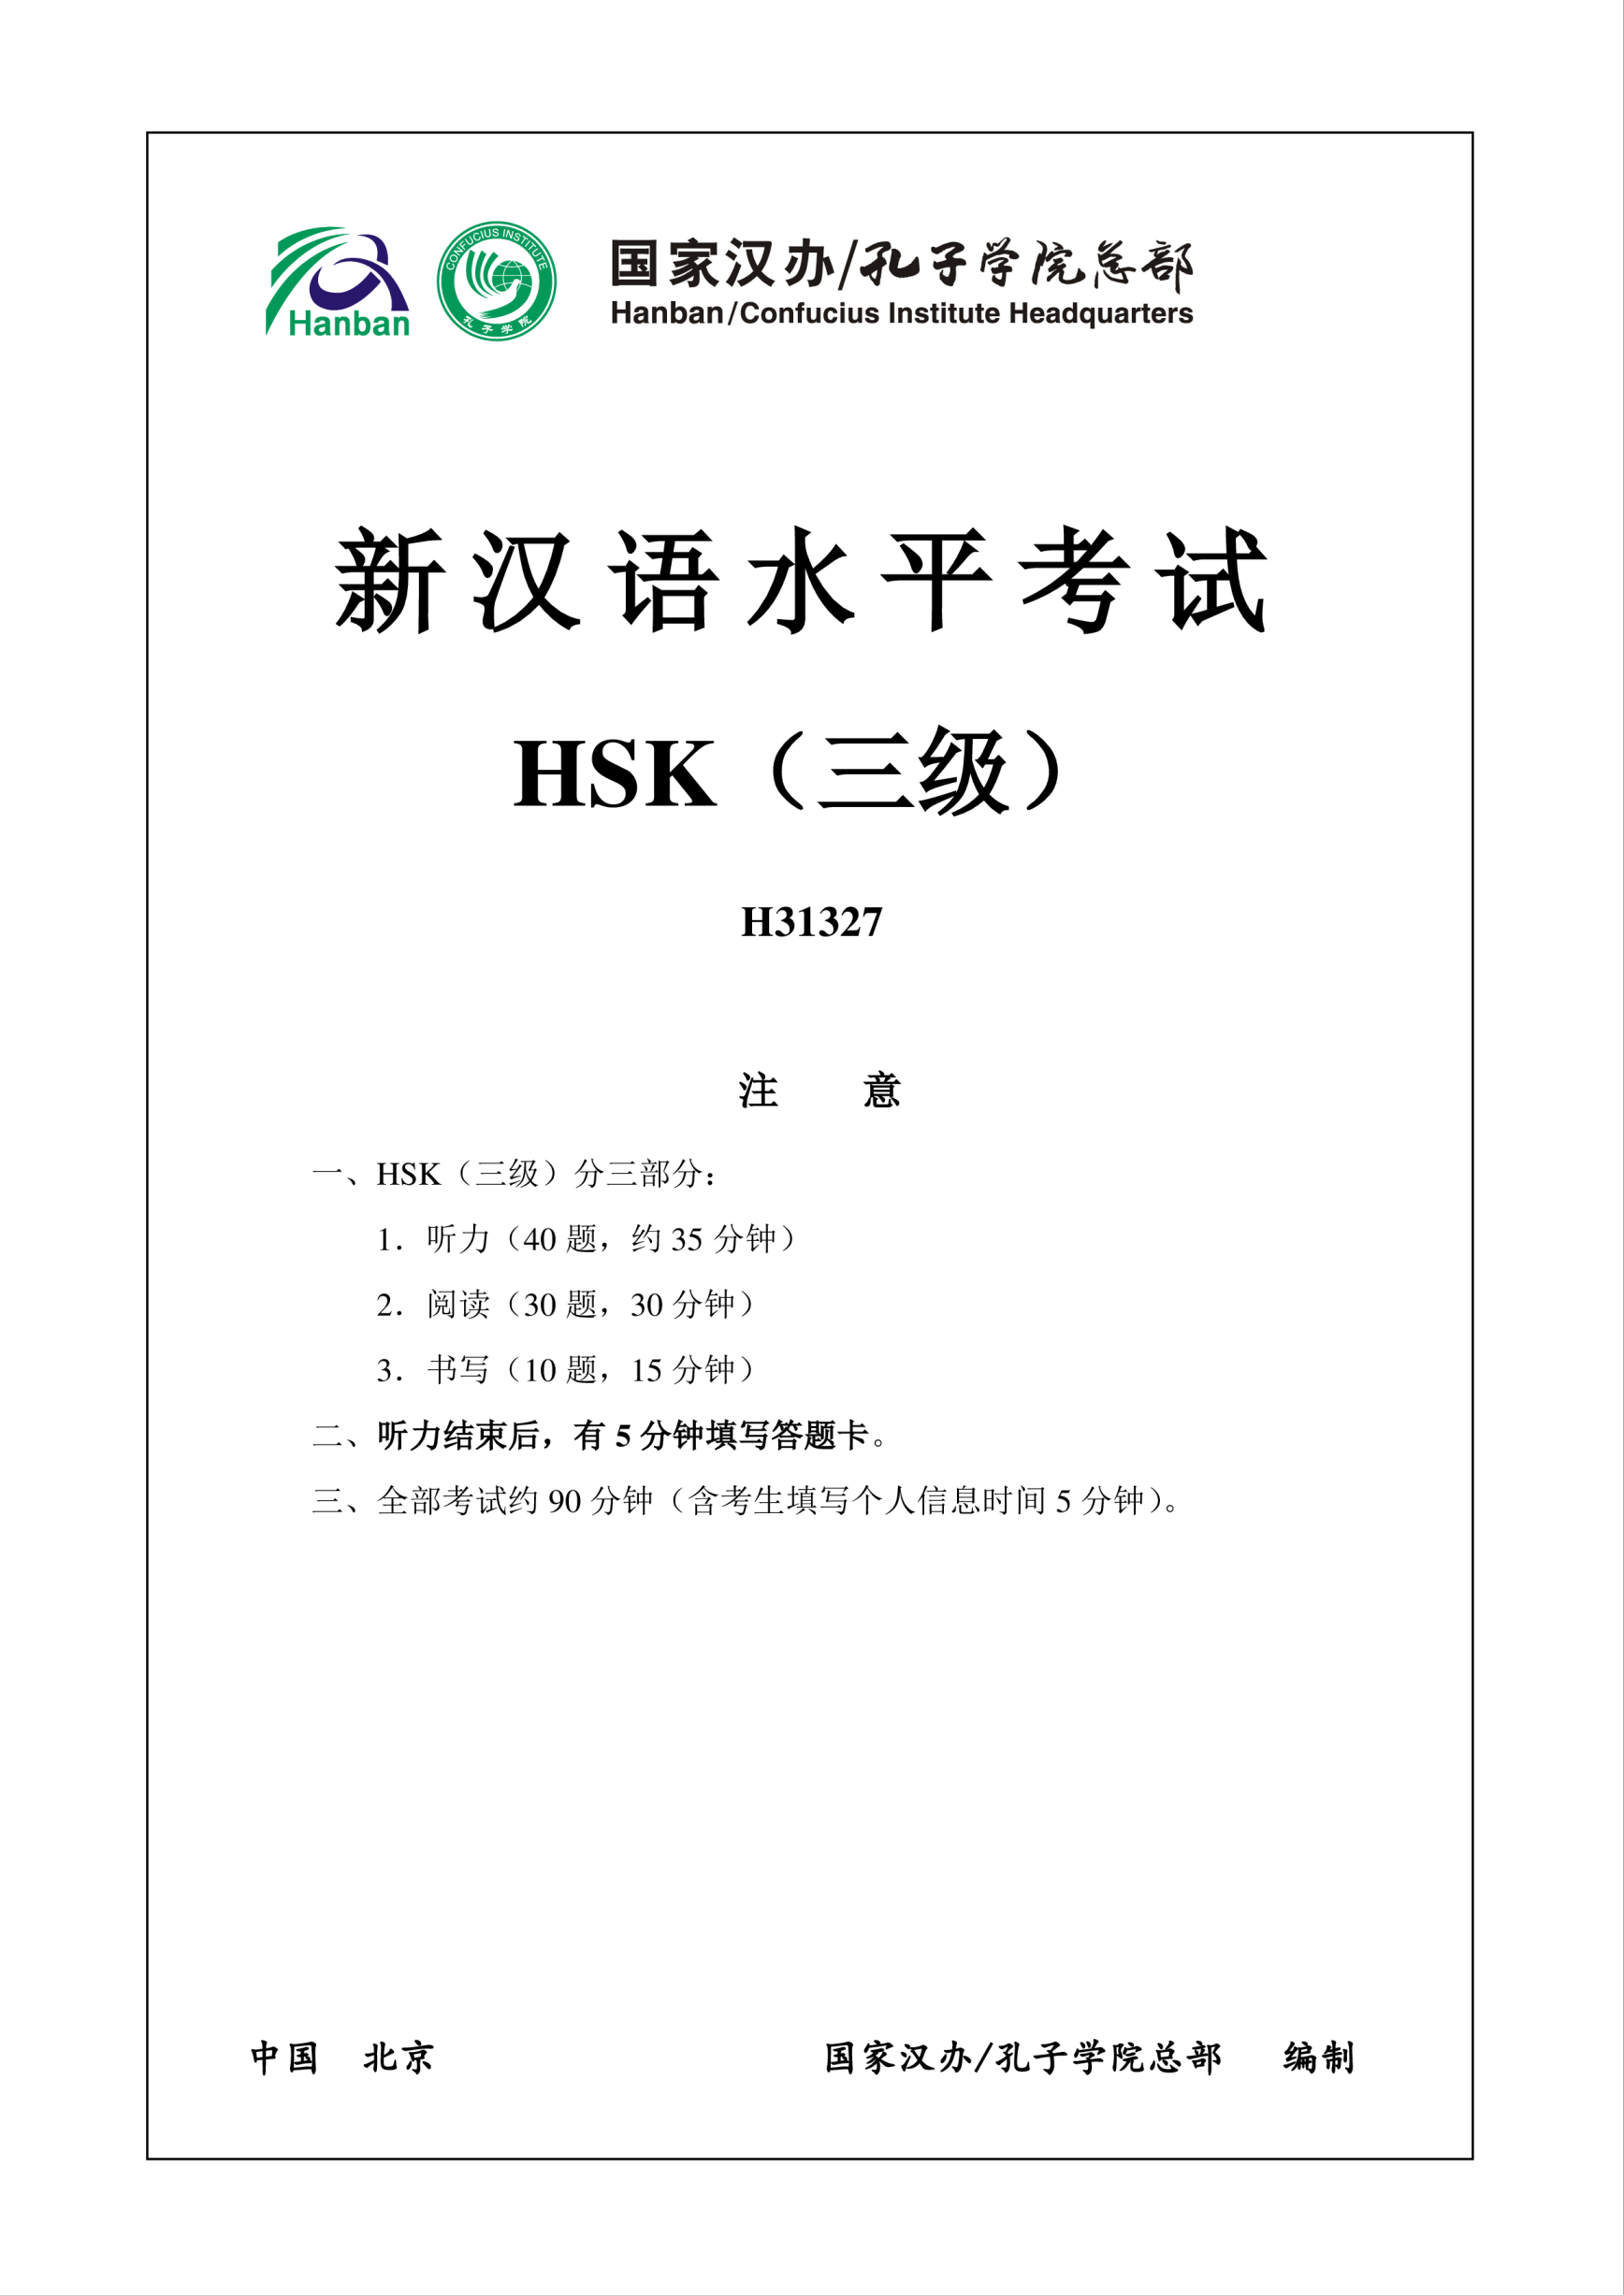 Vorschaubild der VorlageHSK3 Chinese Exam incl Audio and Answers # H31327